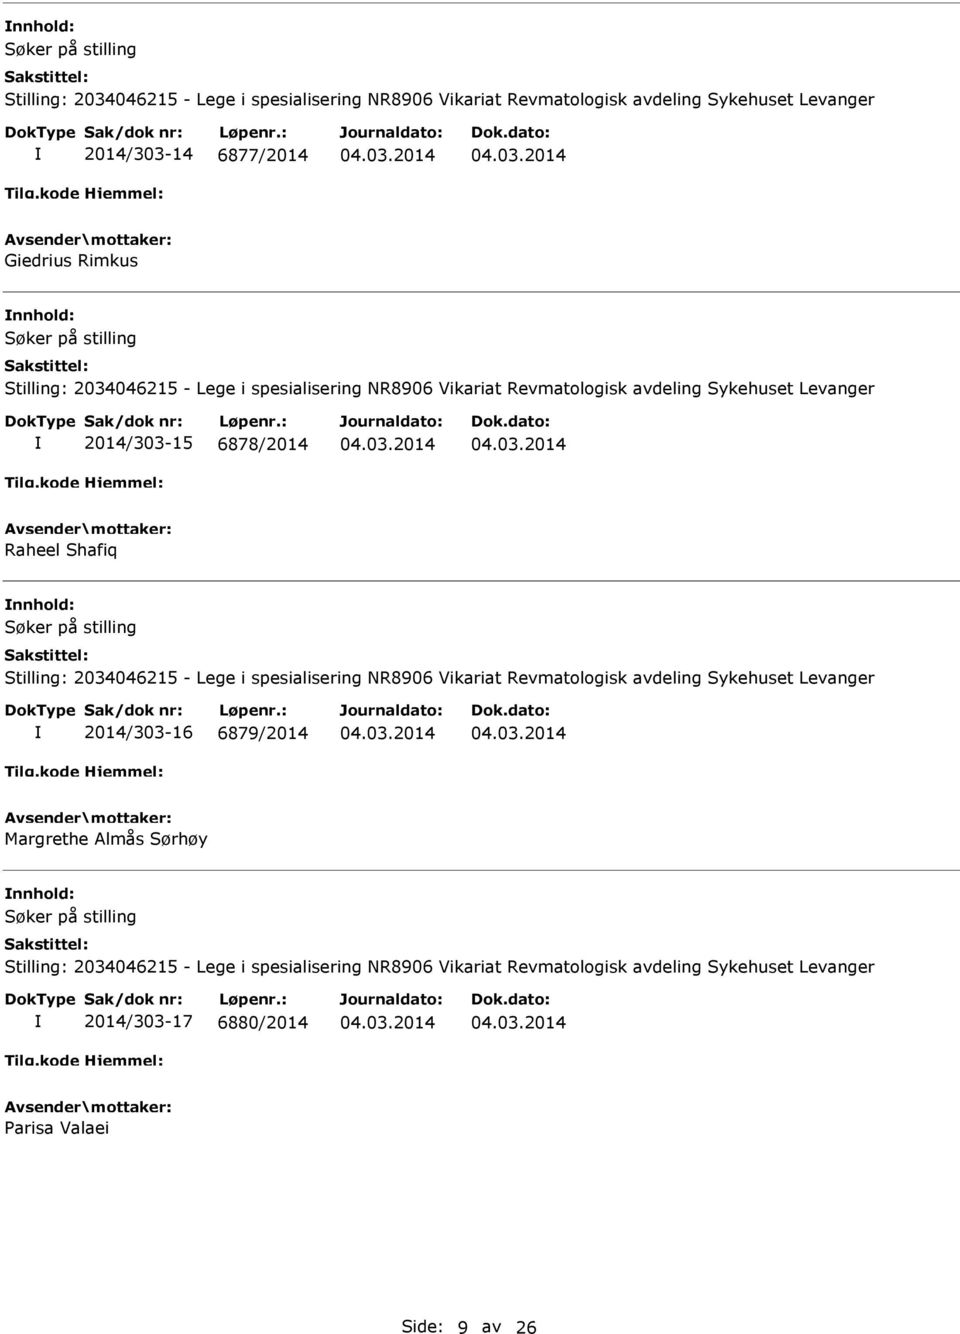 2014/303-16 6879/2014 Margrethe Almås